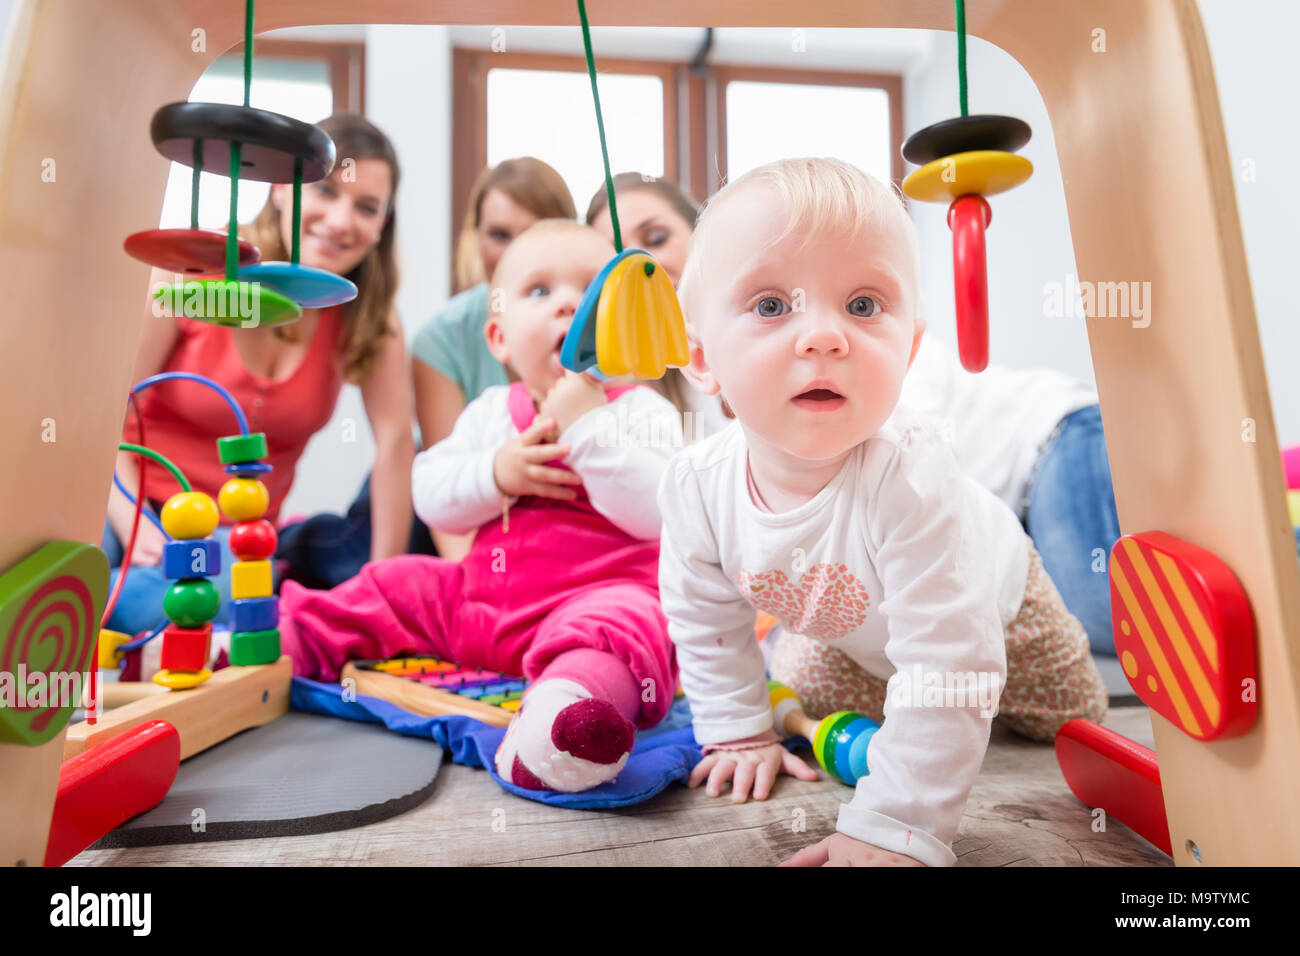 Carino Baby girl mostra curiosità cercando di raggiungere i giocattoli multicolore Foto Stock